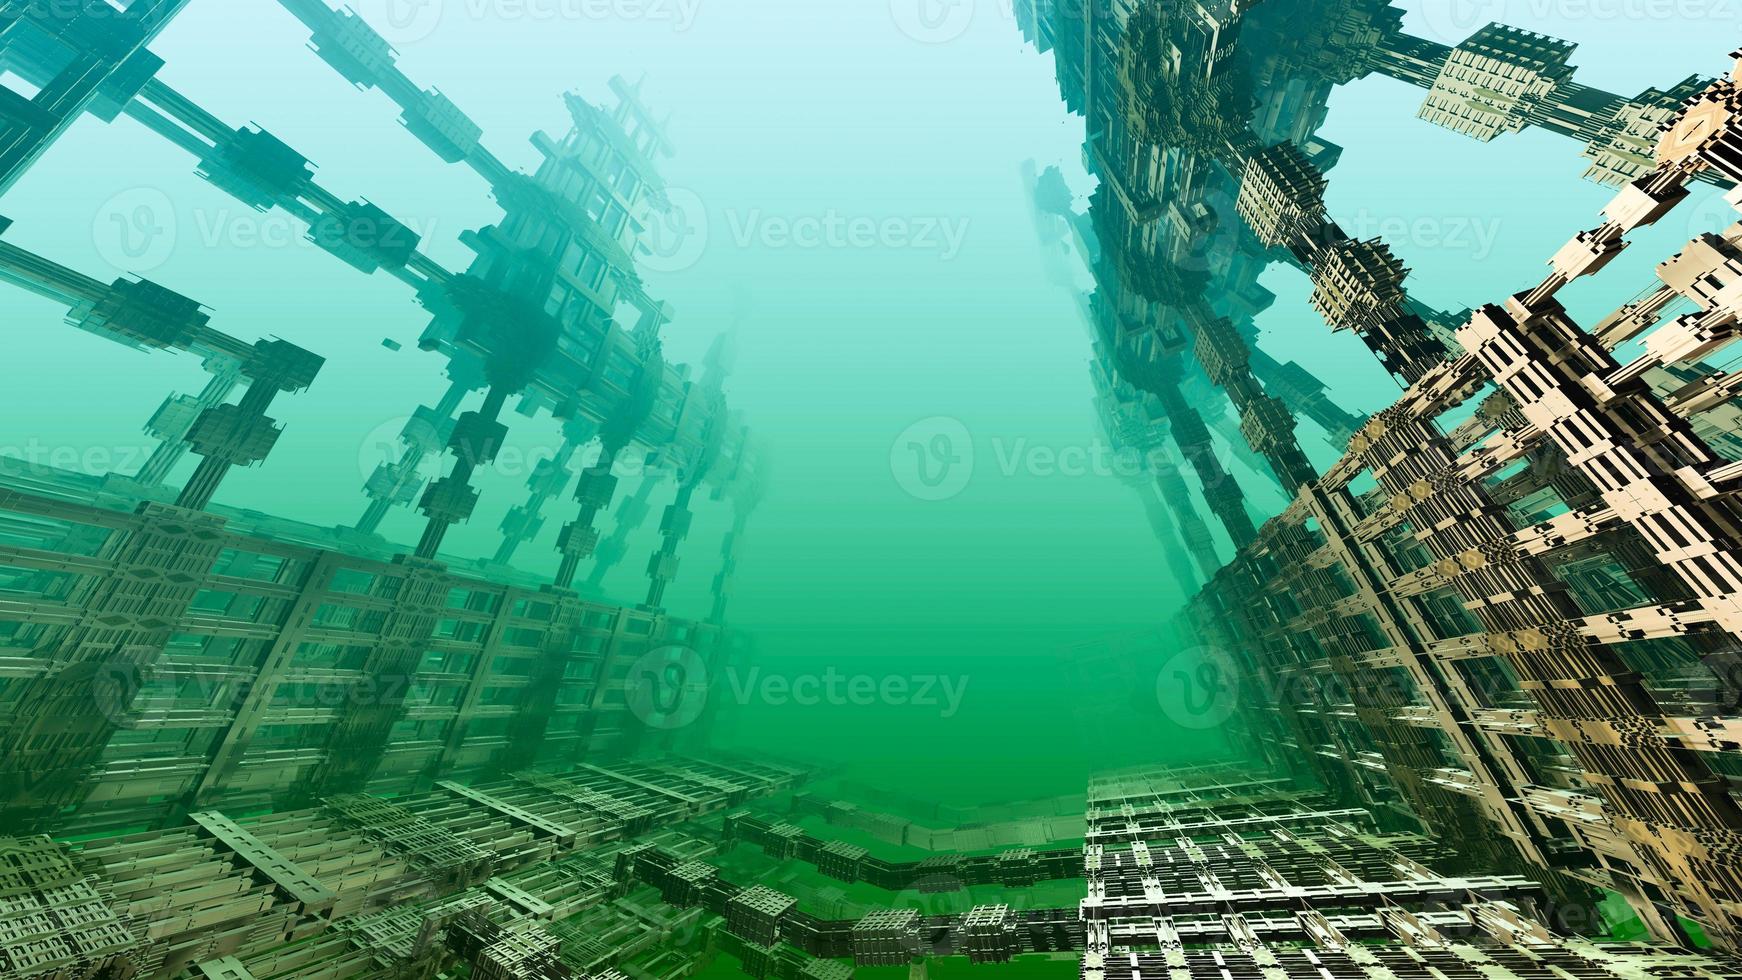 projeto abstrato do fractal gerado por computador. ilustração de alienígenas 3d de um belo mandelbrot matemático infinito conjunto fractal espaço do mar profundo foto